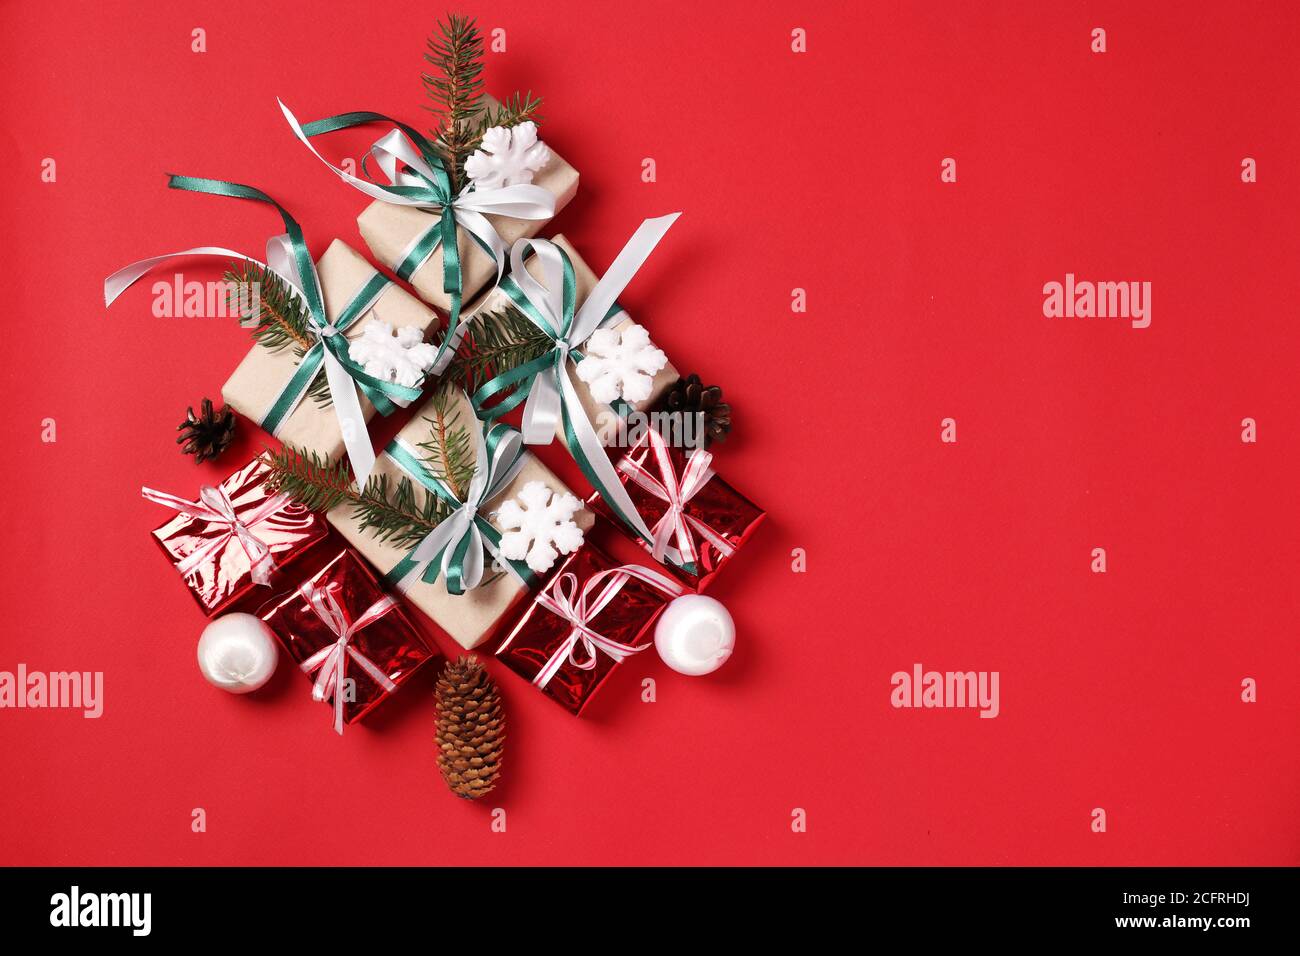 Regalo Di Natale Alternativo.Albero Di Natale Alternativo Immagini E Fotos Stock Alamy